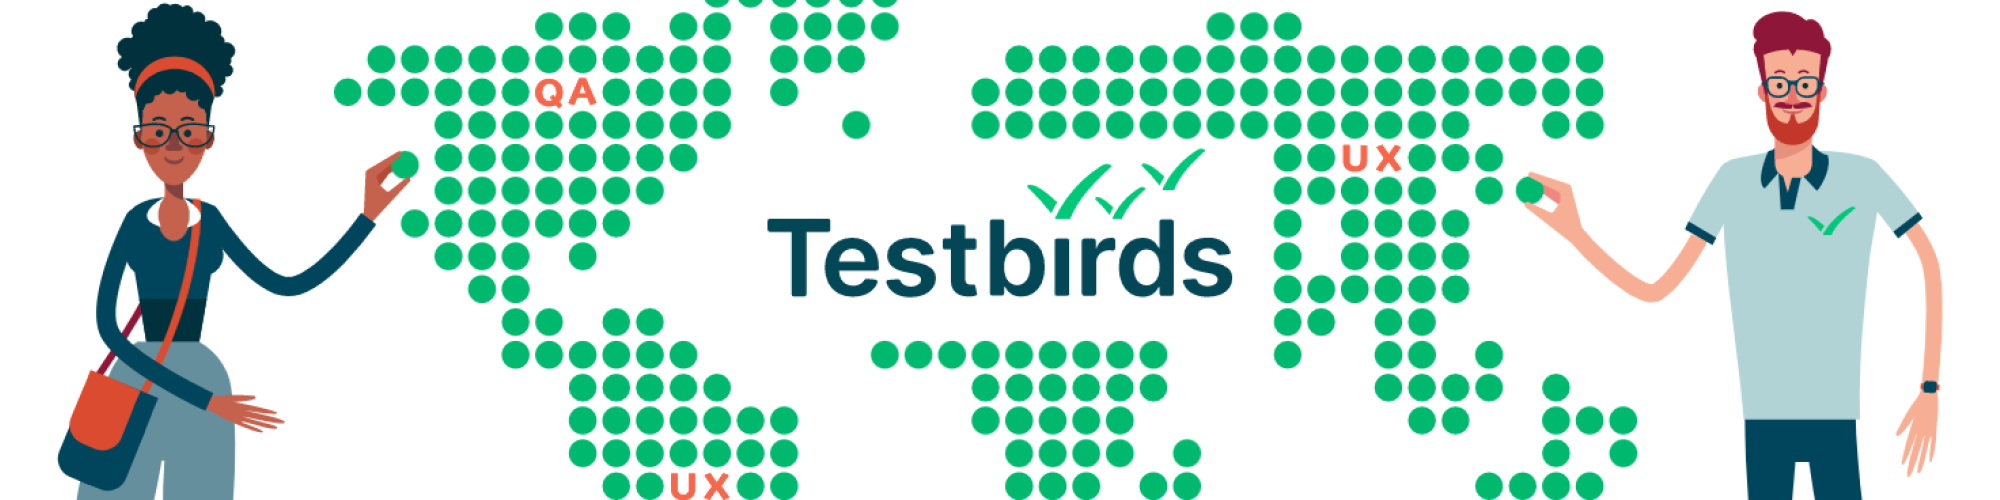 Testbirds